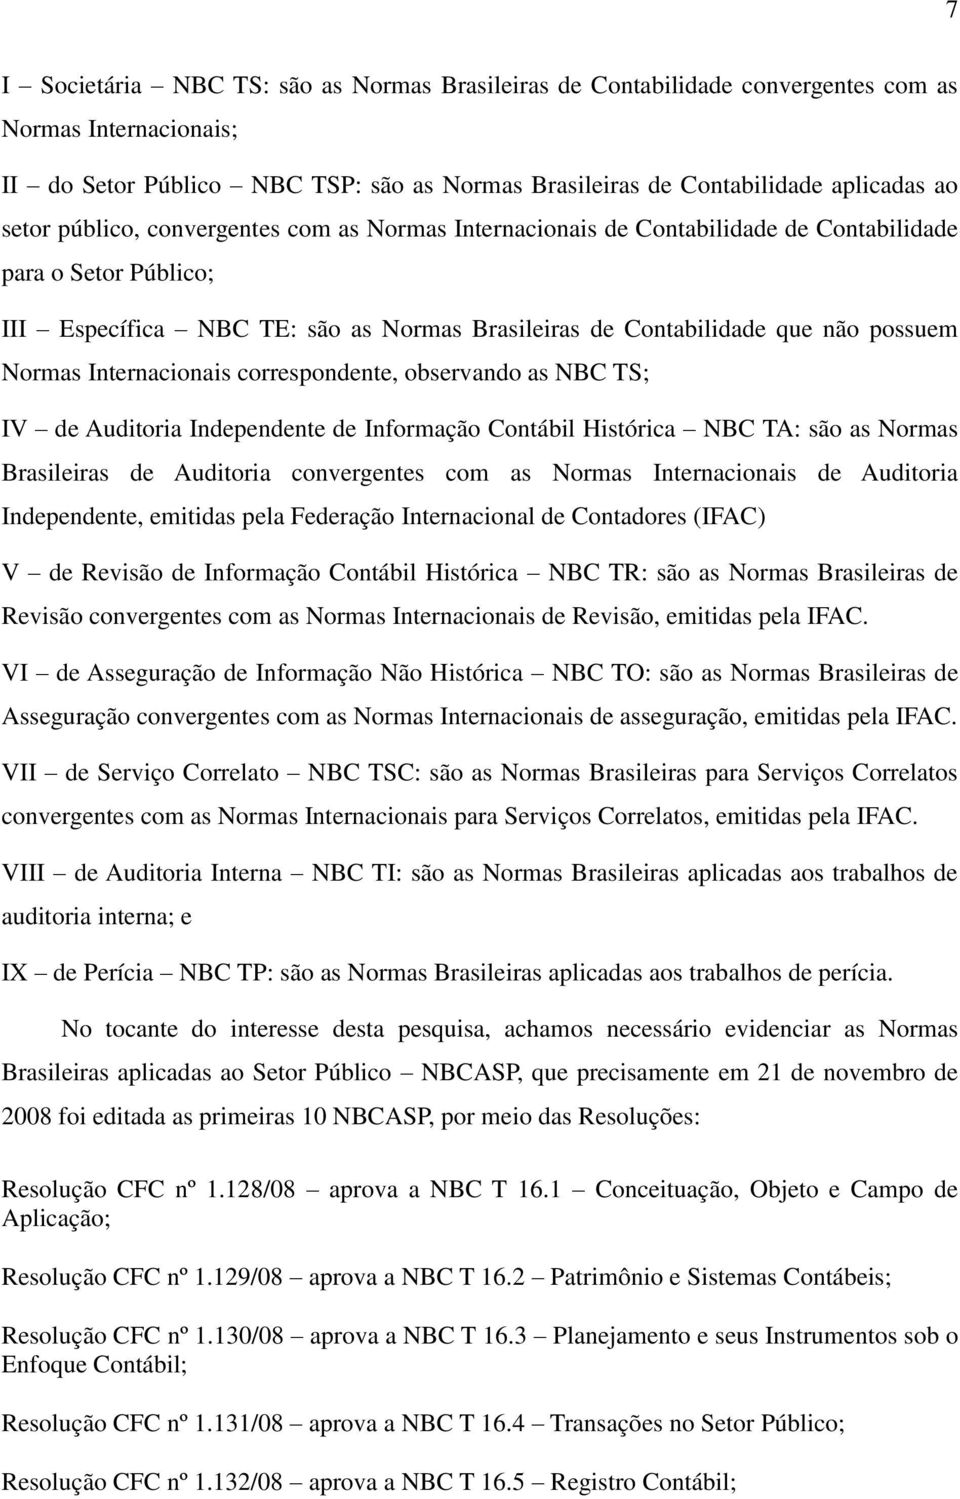 Internacionais correspondente, observando as NBC TS; IV de Auditoria Independente de Informação Contábil Histórica NBC TA: são as Normas Brasileiras de Auditoria convergentes com as Normas